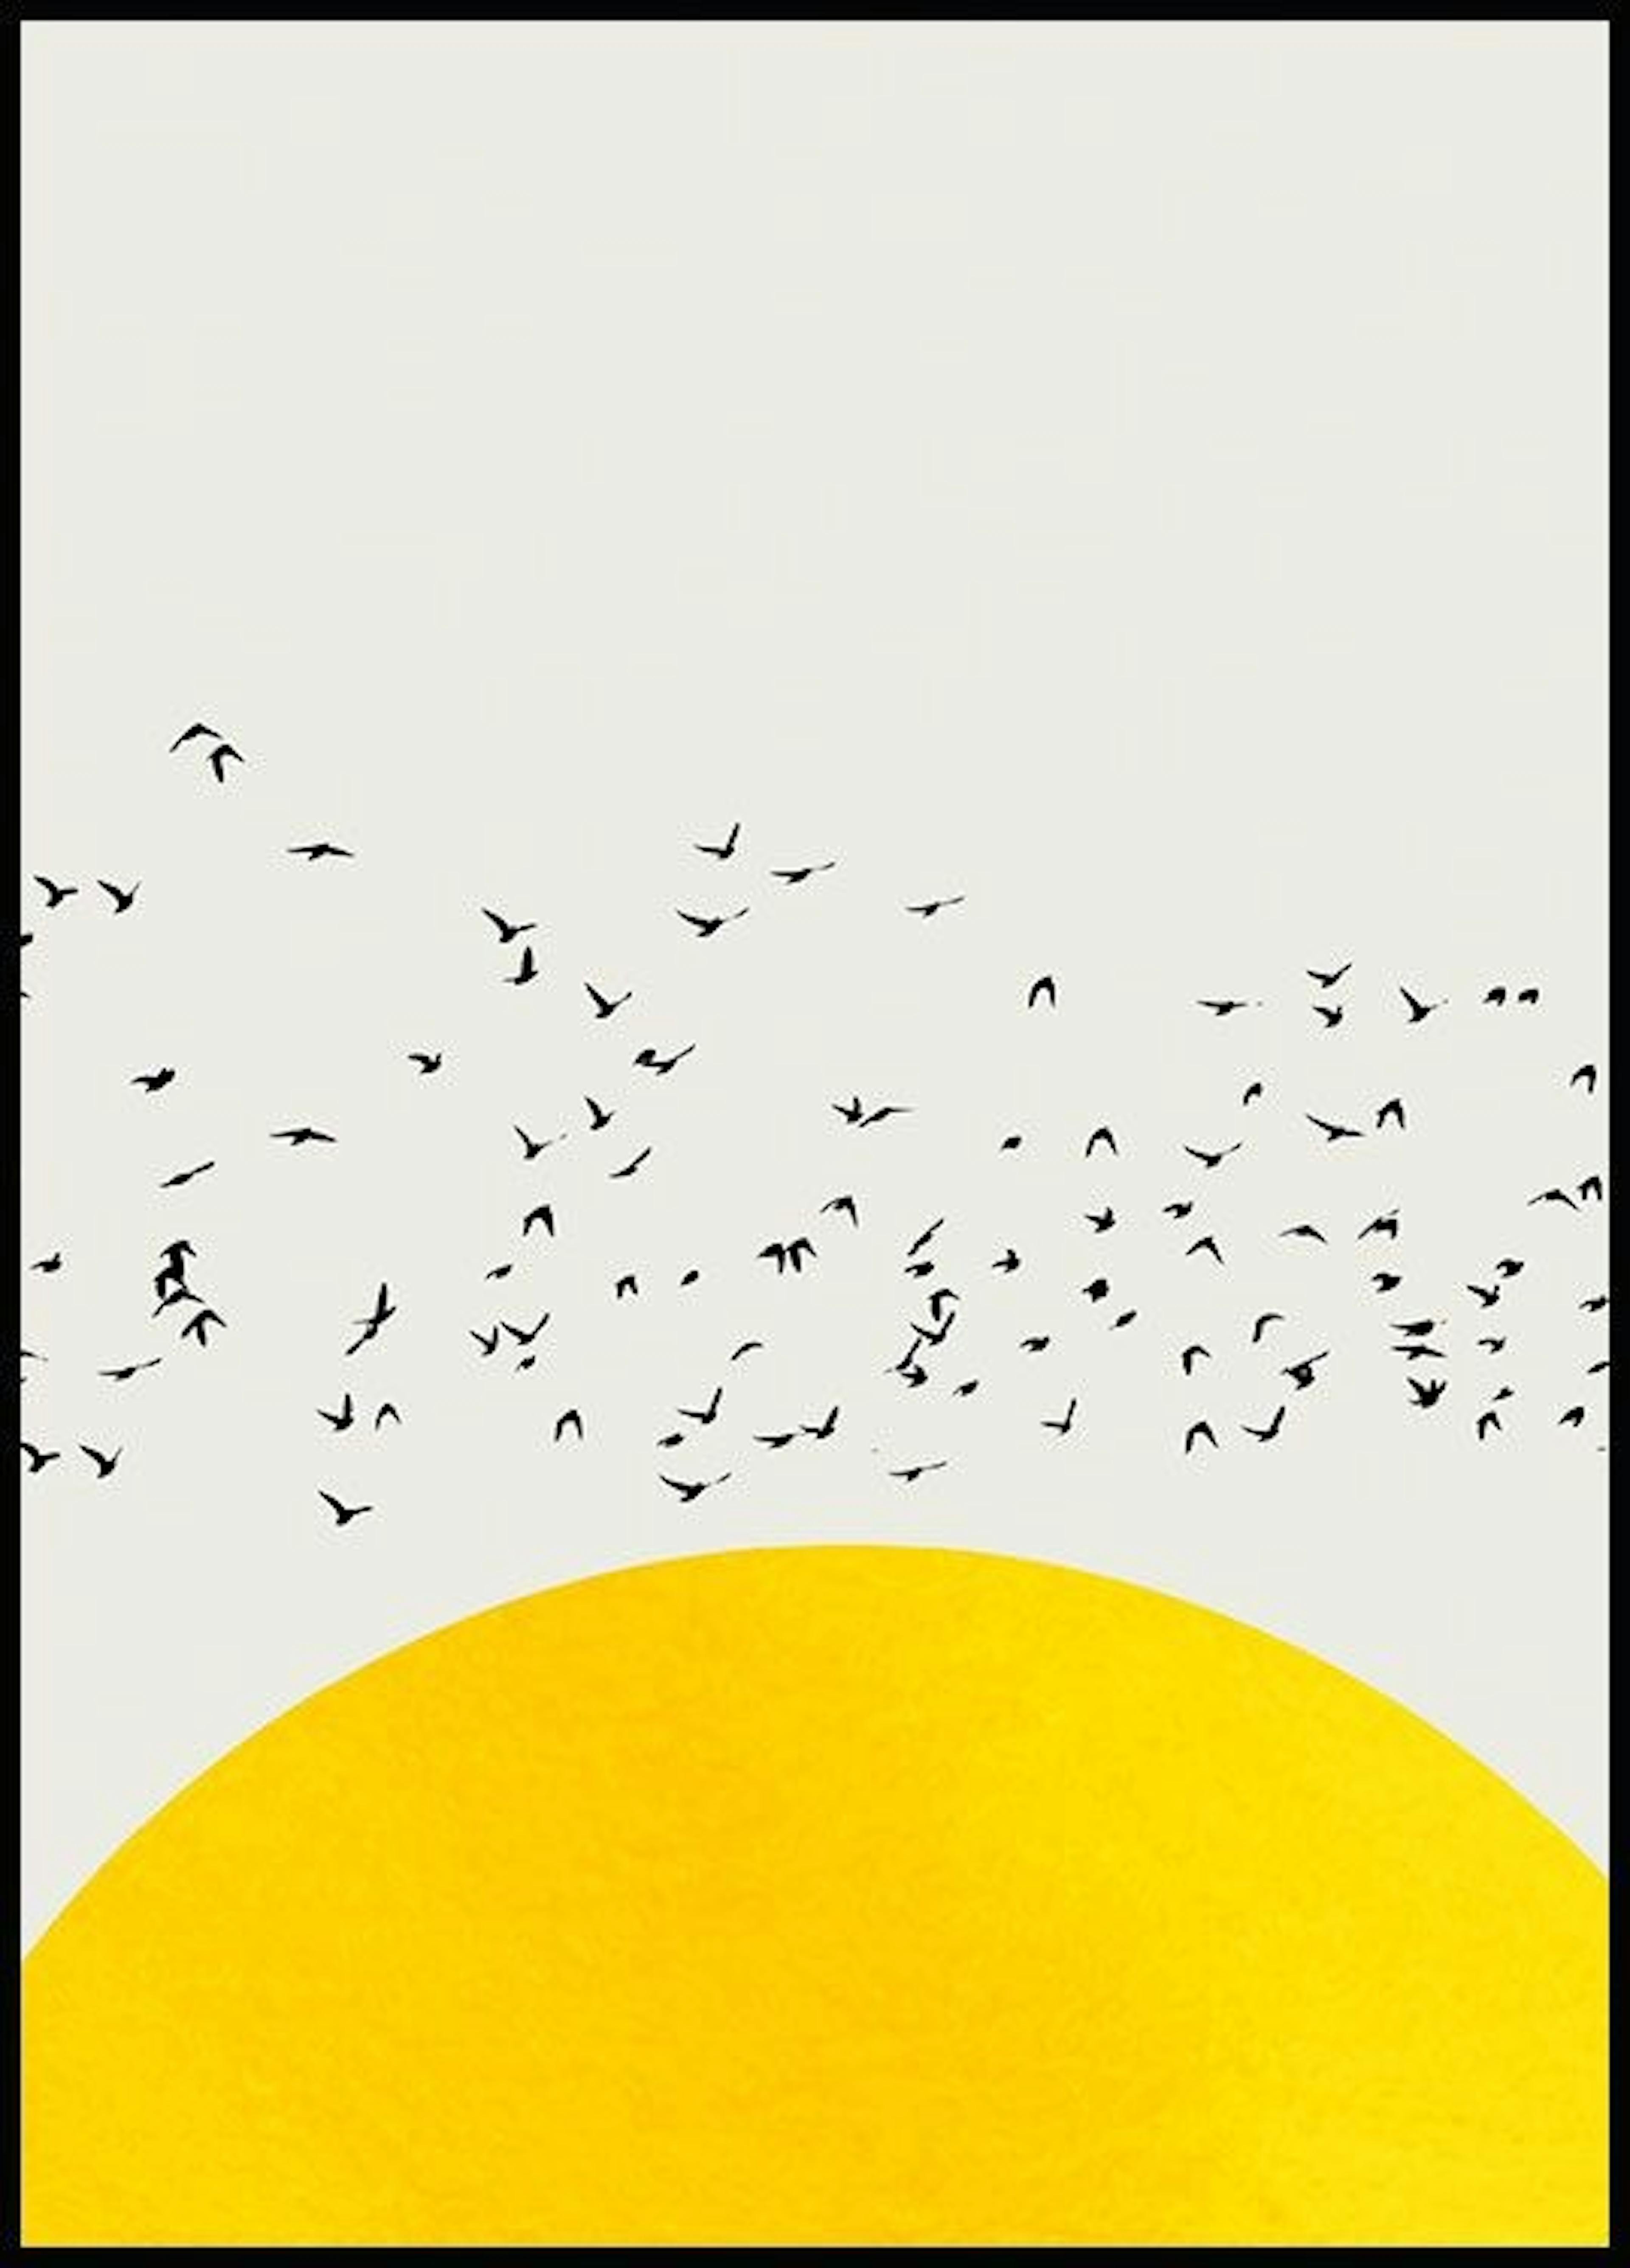 A Thousand Birds Poster 0